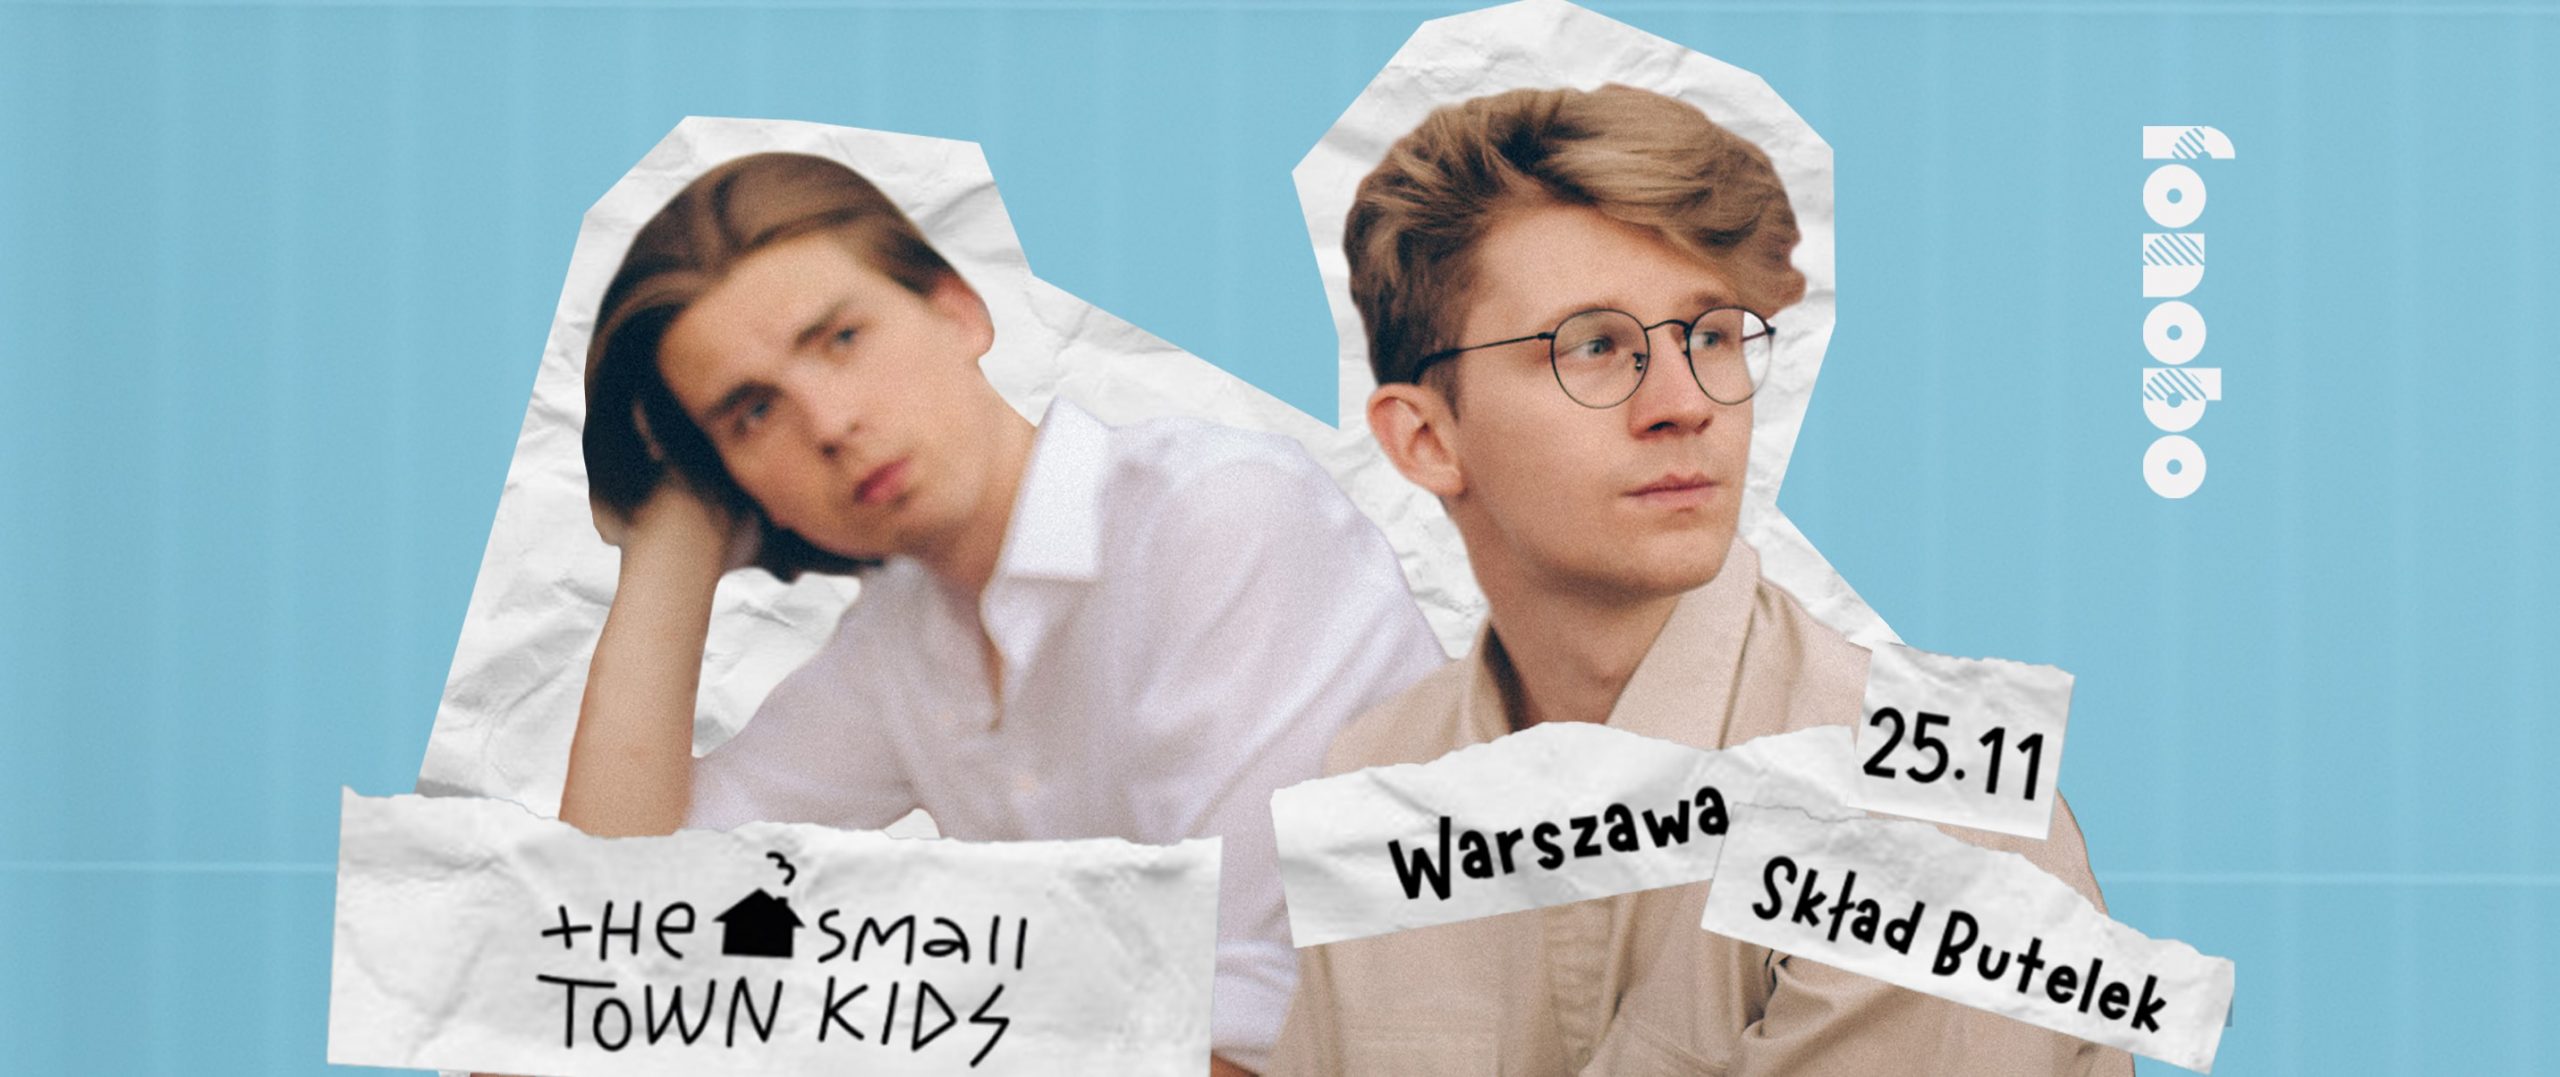 the small town kids – Warszawa – 25.11